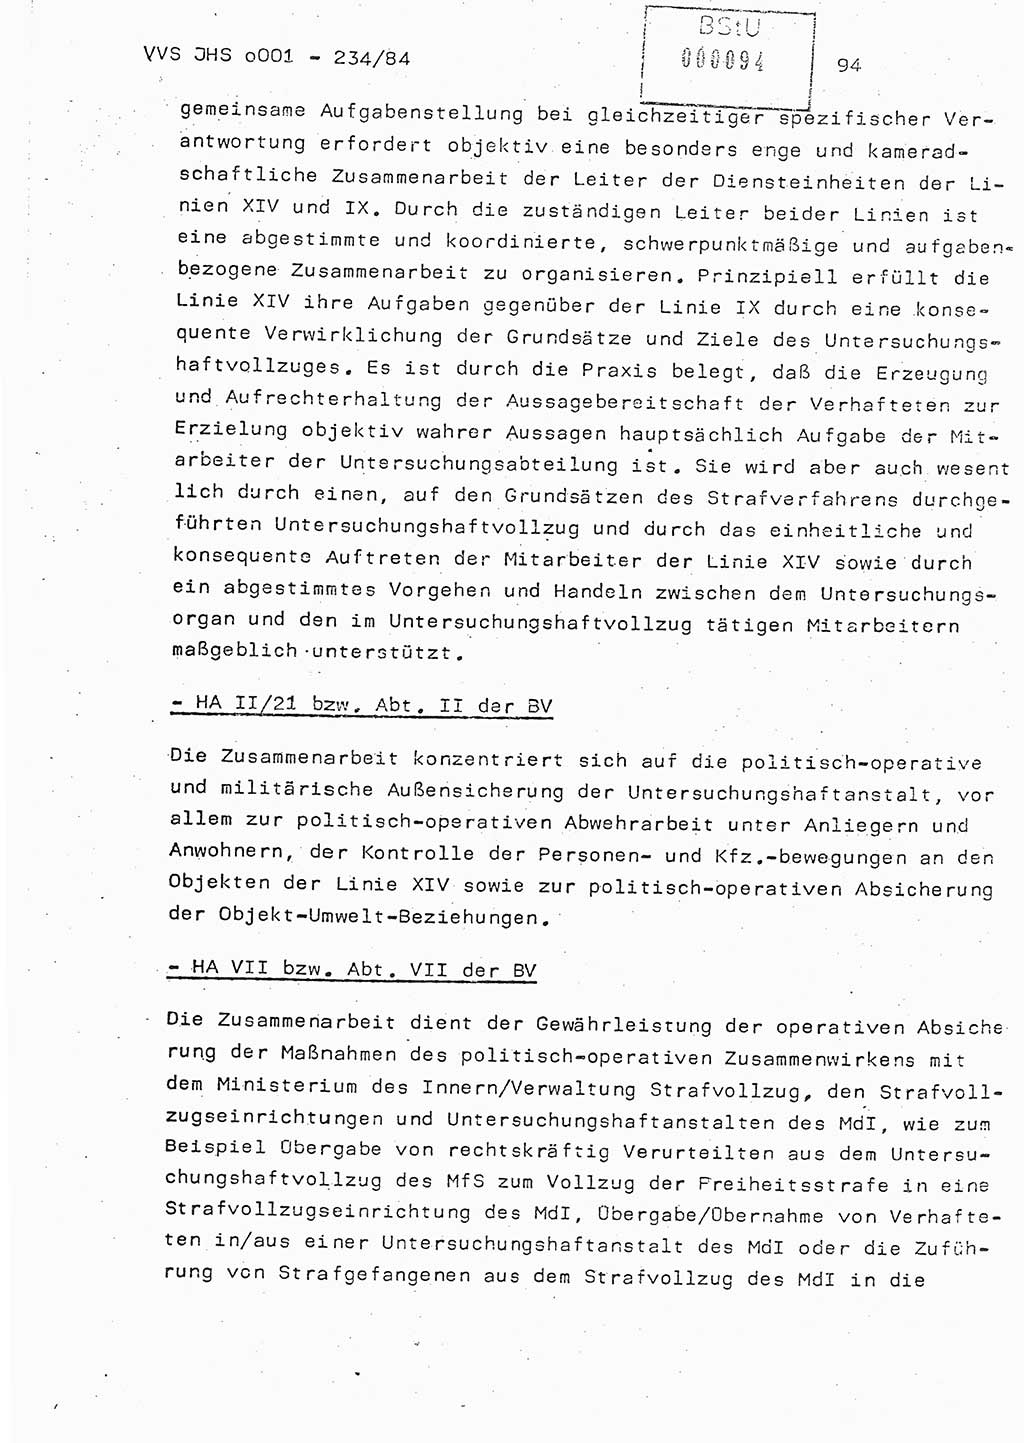 Dissertation Oberst Siegfried Rataizick (Abt. ⅩⅣ), Oberstleutnant Volkmar Heinz (Abt. ⅩⅣ), Oberstleutnant Werner Stein (HA Ⅸ), Hauptmann Heinz Conrad (JHS), Ministerium für Staatssicherheit (MfS) [Deutsche Demokratische Republik (DDR)], Juristische Hochschule (JHS), Vertrauliche Verschlußsache (VVS) o001-234/84, Potsdam 1984, Seite 94 (Diss. MfS DDR JHS VVS o001-234/84 1984, S. 94)